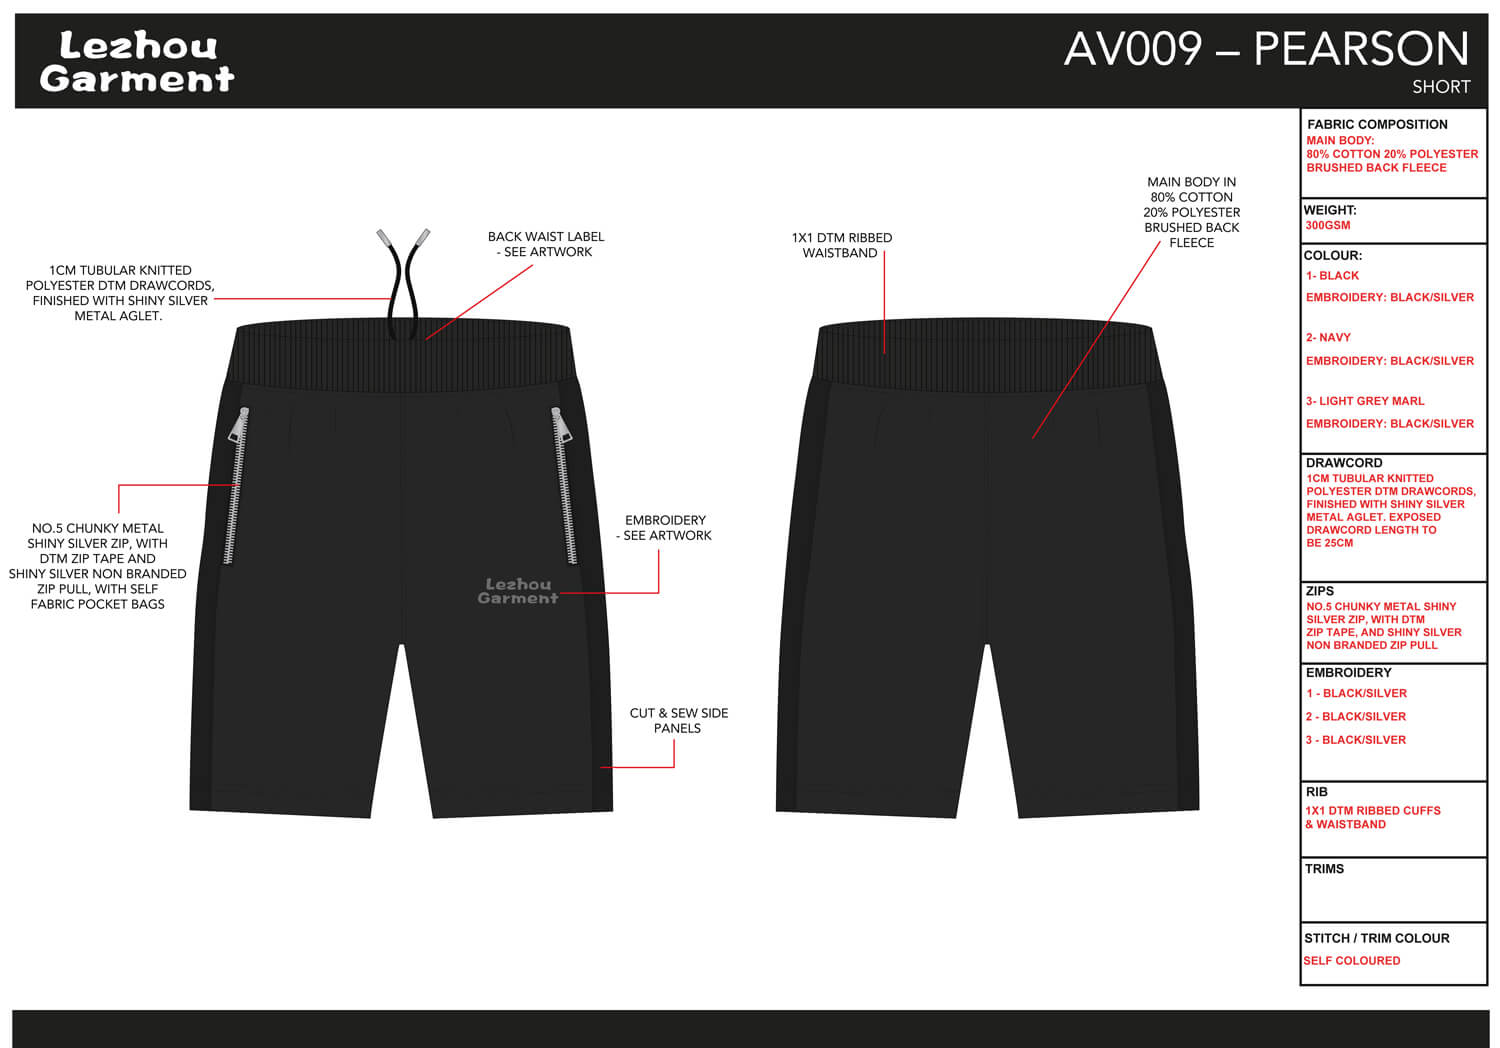 Lezhou Garment-Tech Pack Sample Sheet-Details